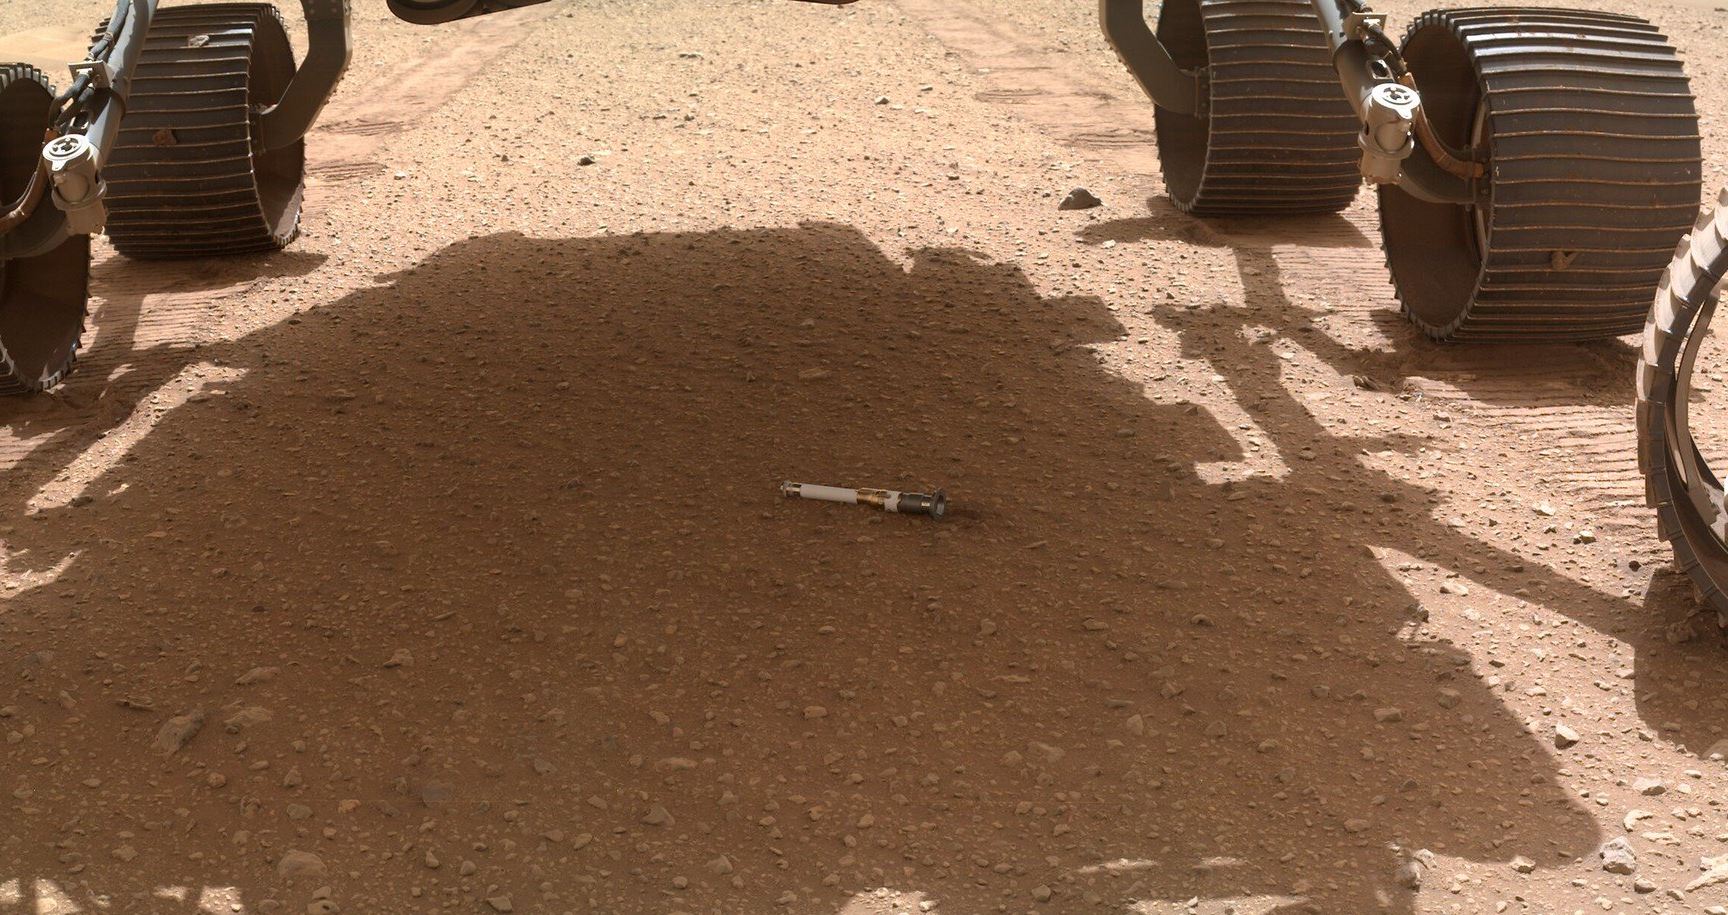 Pourquoi le rover Perseverance dépose-t-il une partie de ses échantillons sur la surface de Mars ?